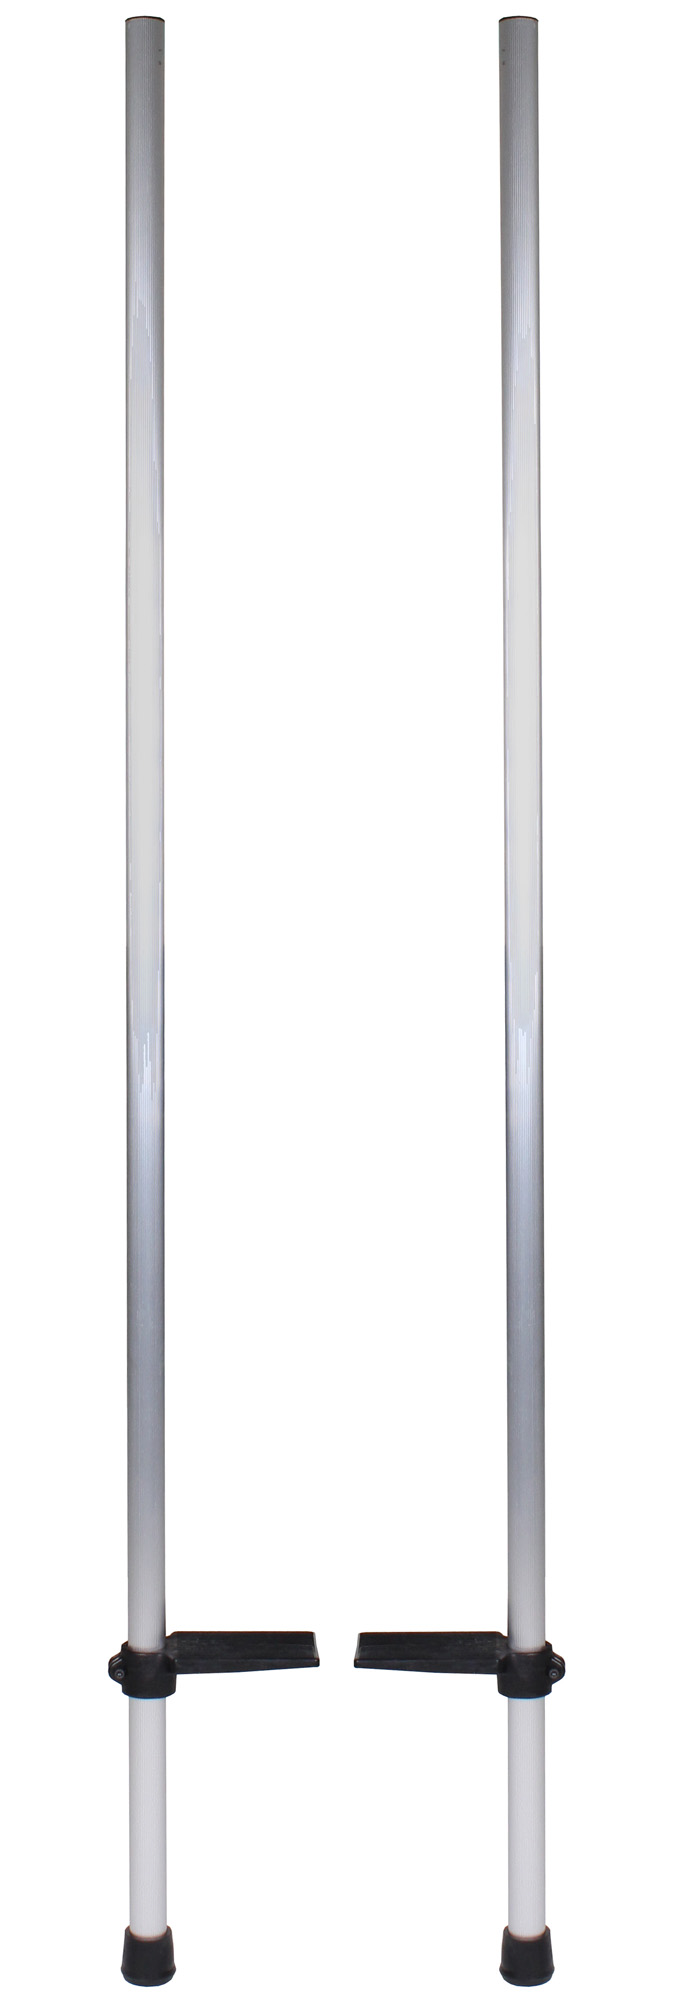 Dětské hliníkové chůdy, délka 156cm